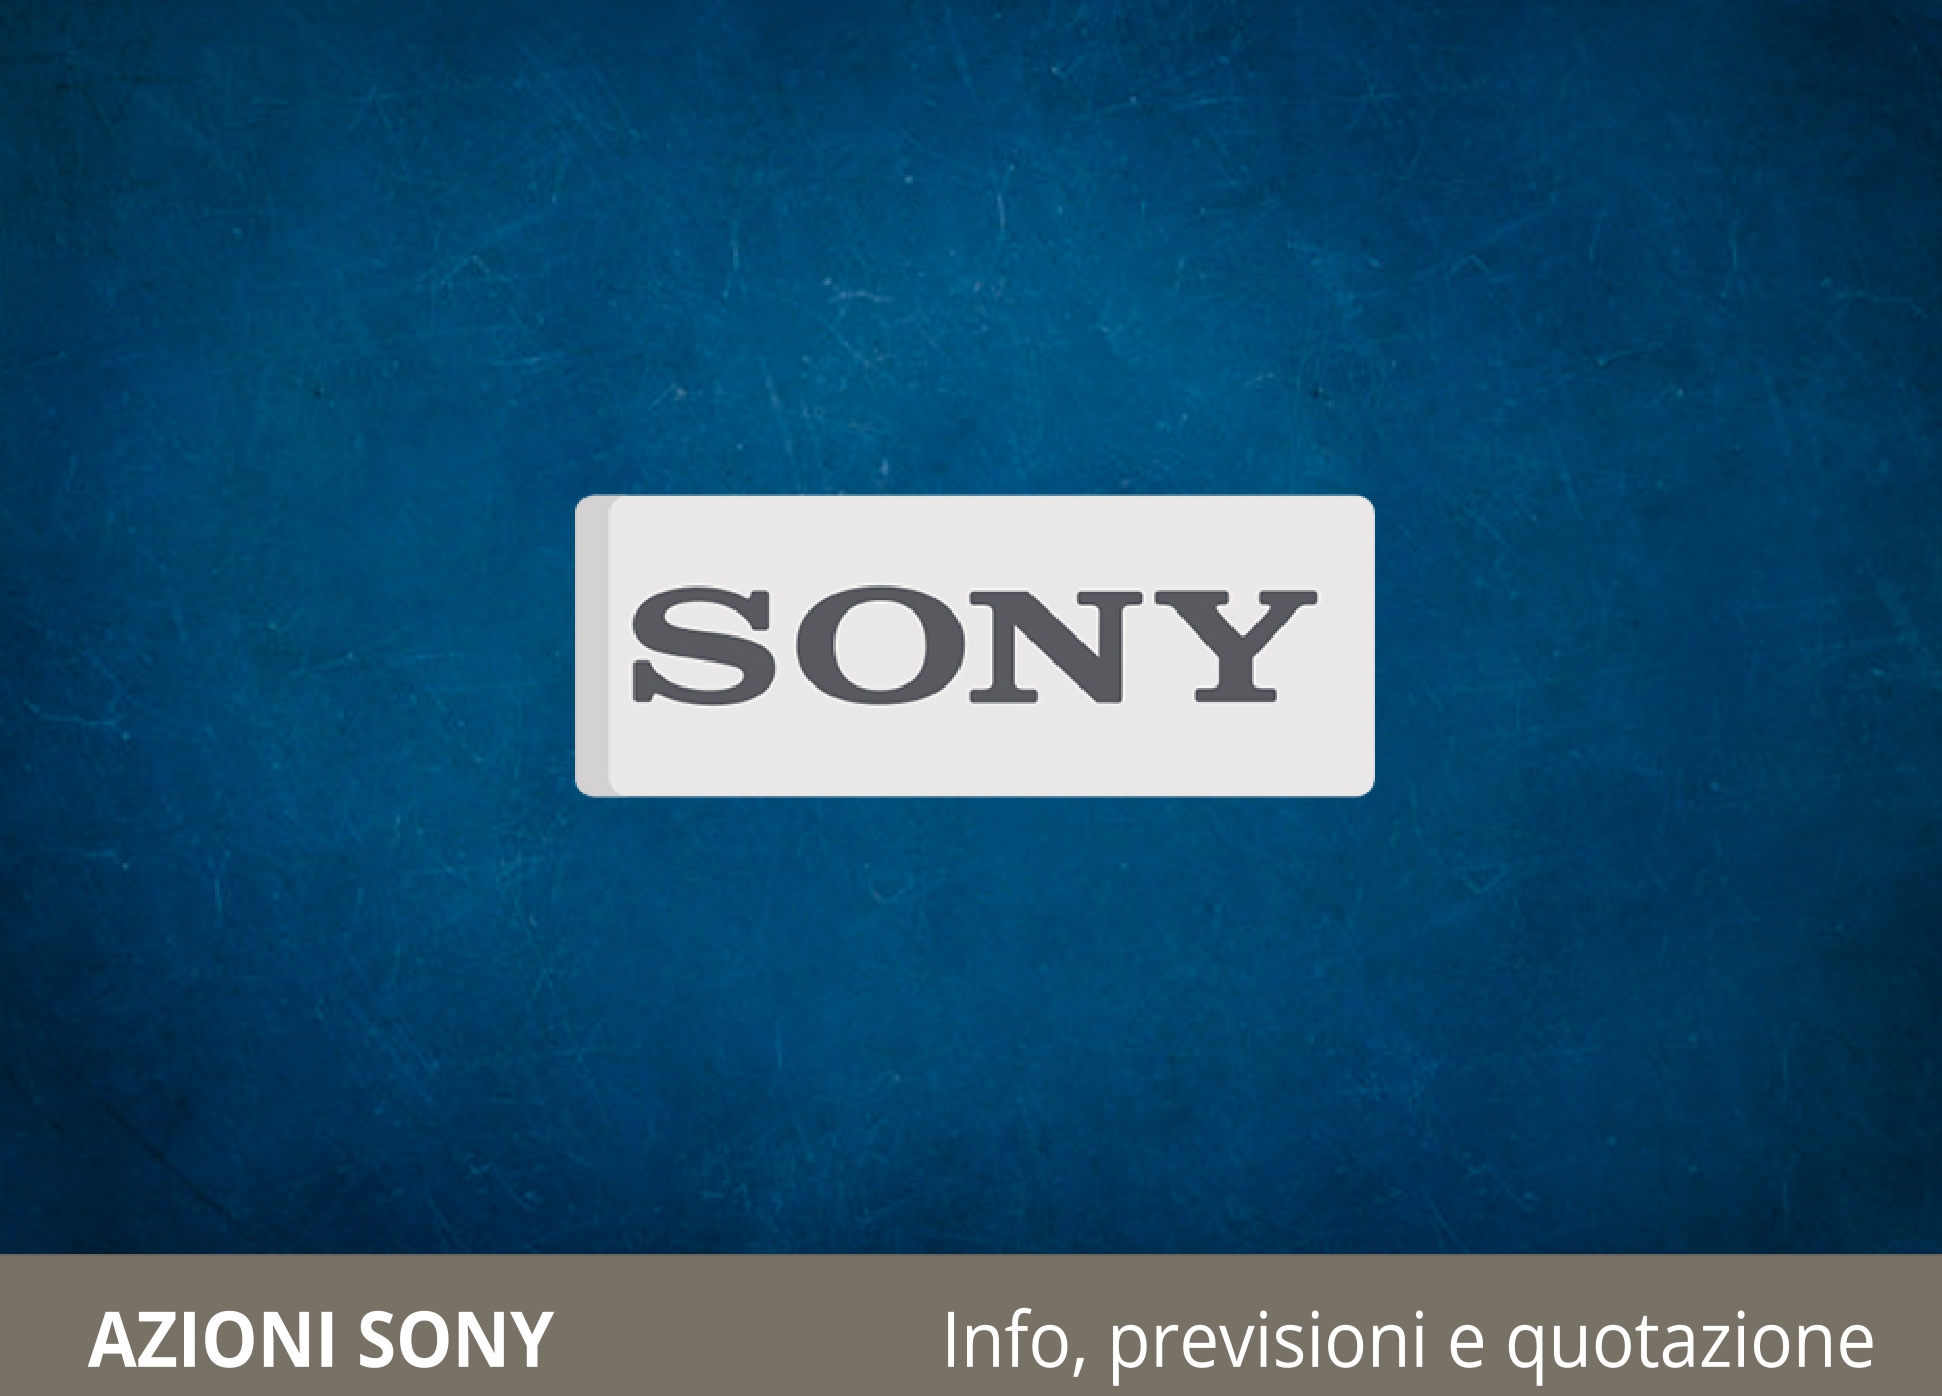 Quotazione Sony azioni in tempo reale